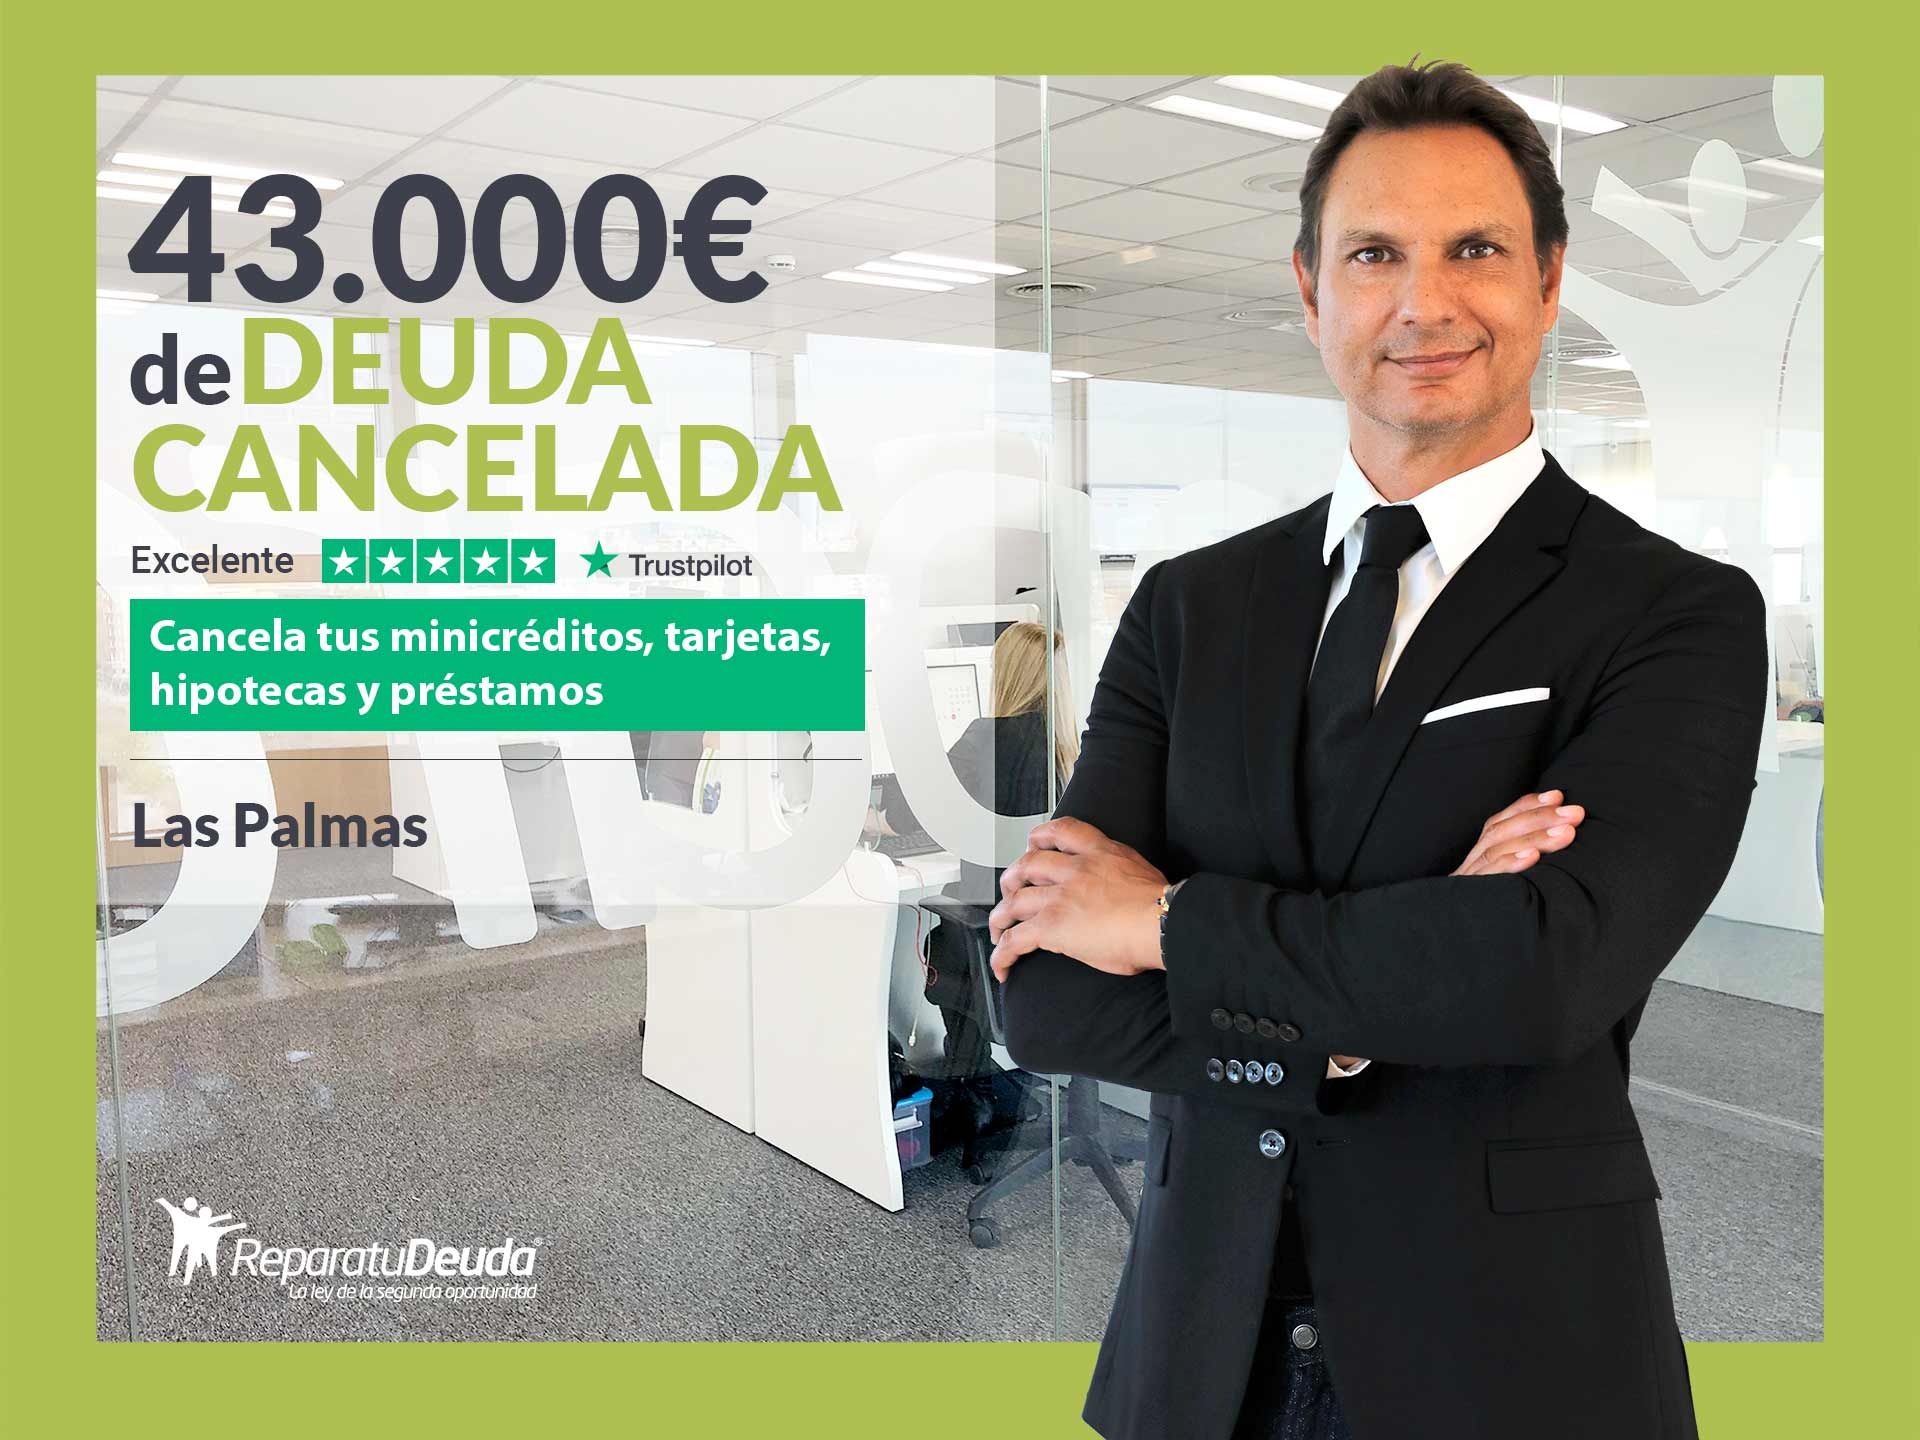 Repara tu Deuda Abogados cancela 43.000? en Las Palmas de Gran Canaria con la Ley de Segunda Oportunidad